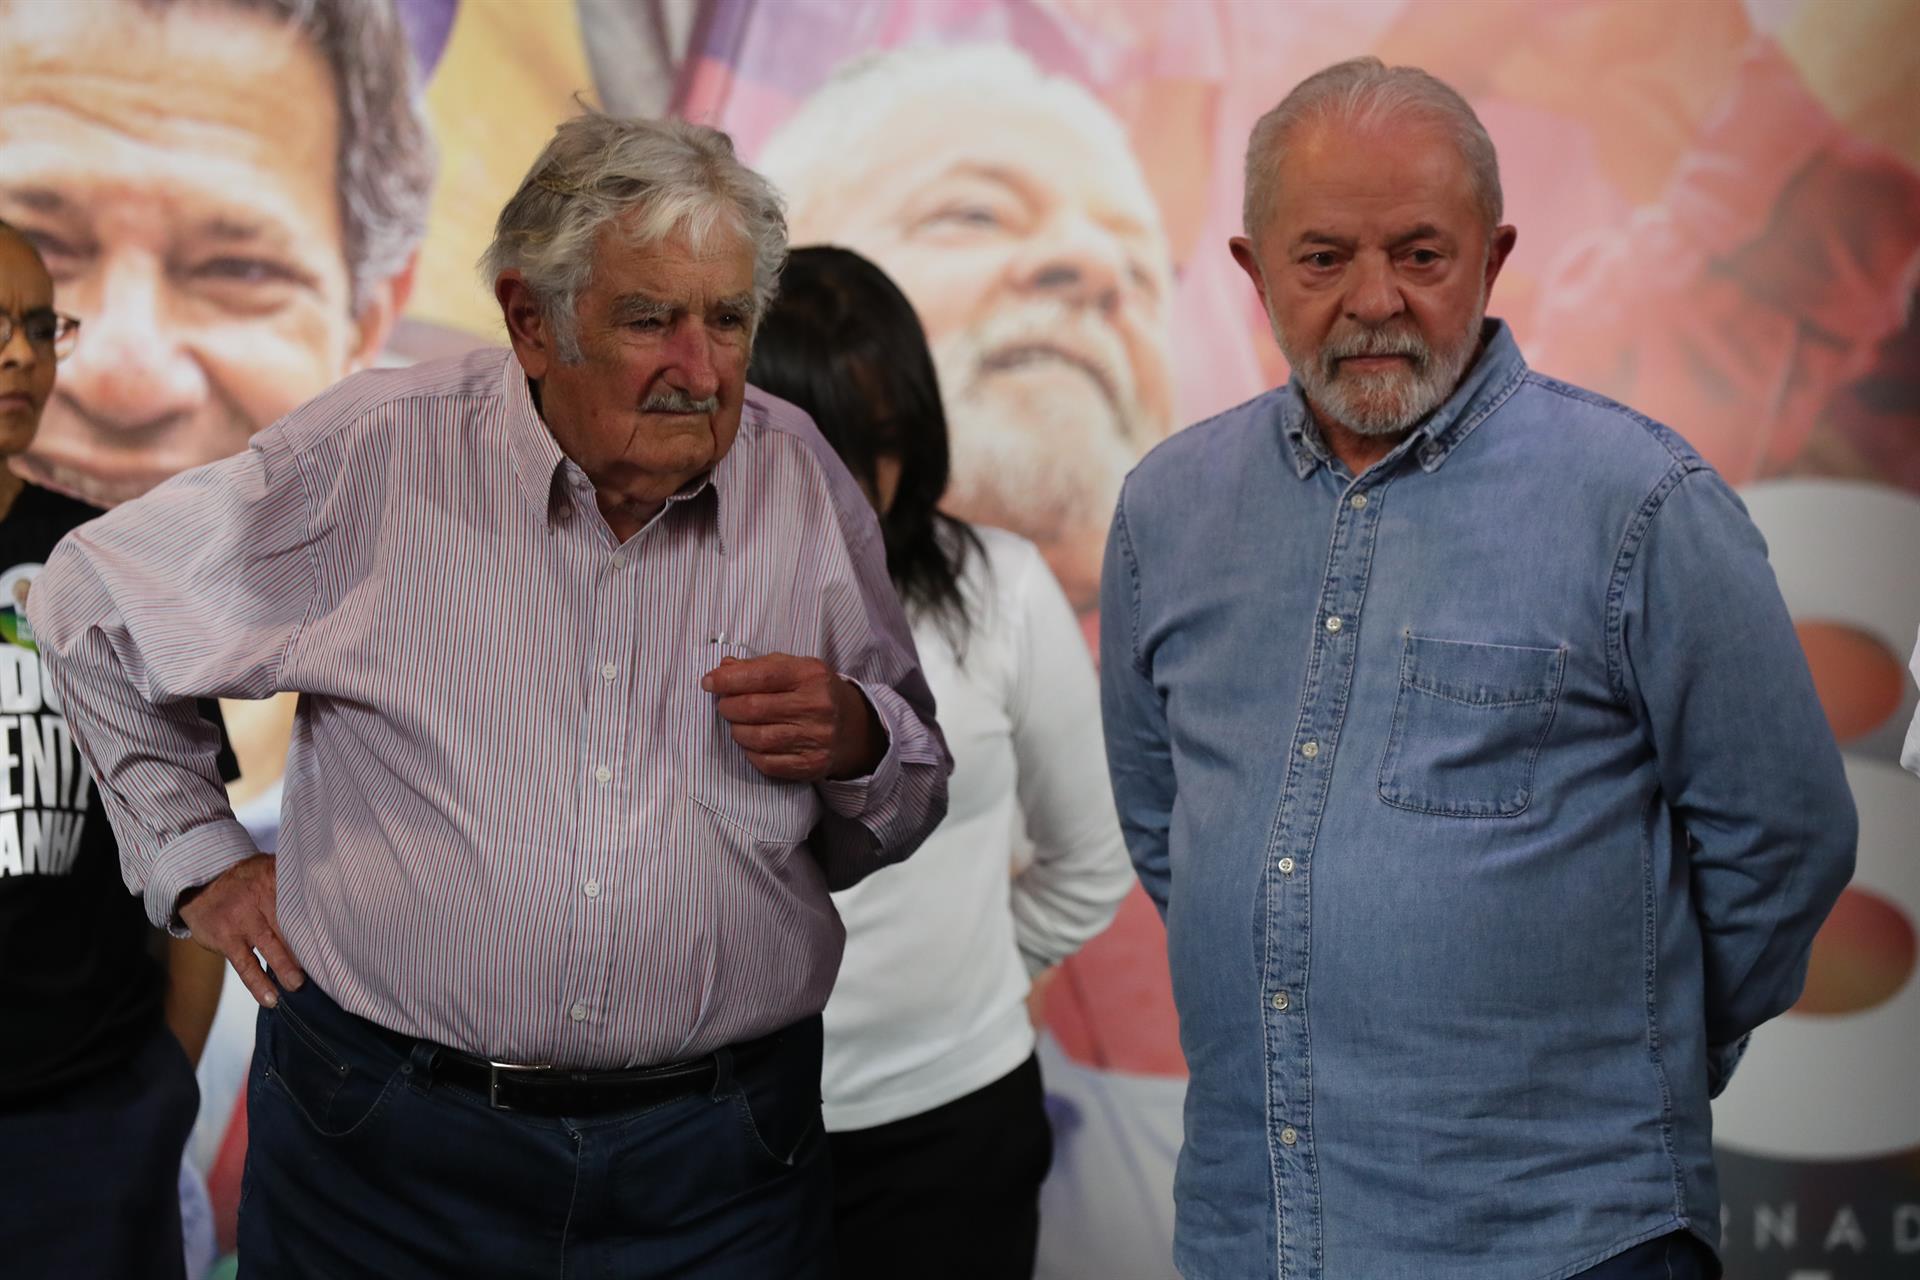 El candidato presidencial brasileño Luiz Inácio Lula da Silva participa hoy en una rueda de prensa junto al exmandatario uruguayo José "Pepe" Mujica (i), en Sao Paulo (Brasil). EFE/Sebastiao Moreira